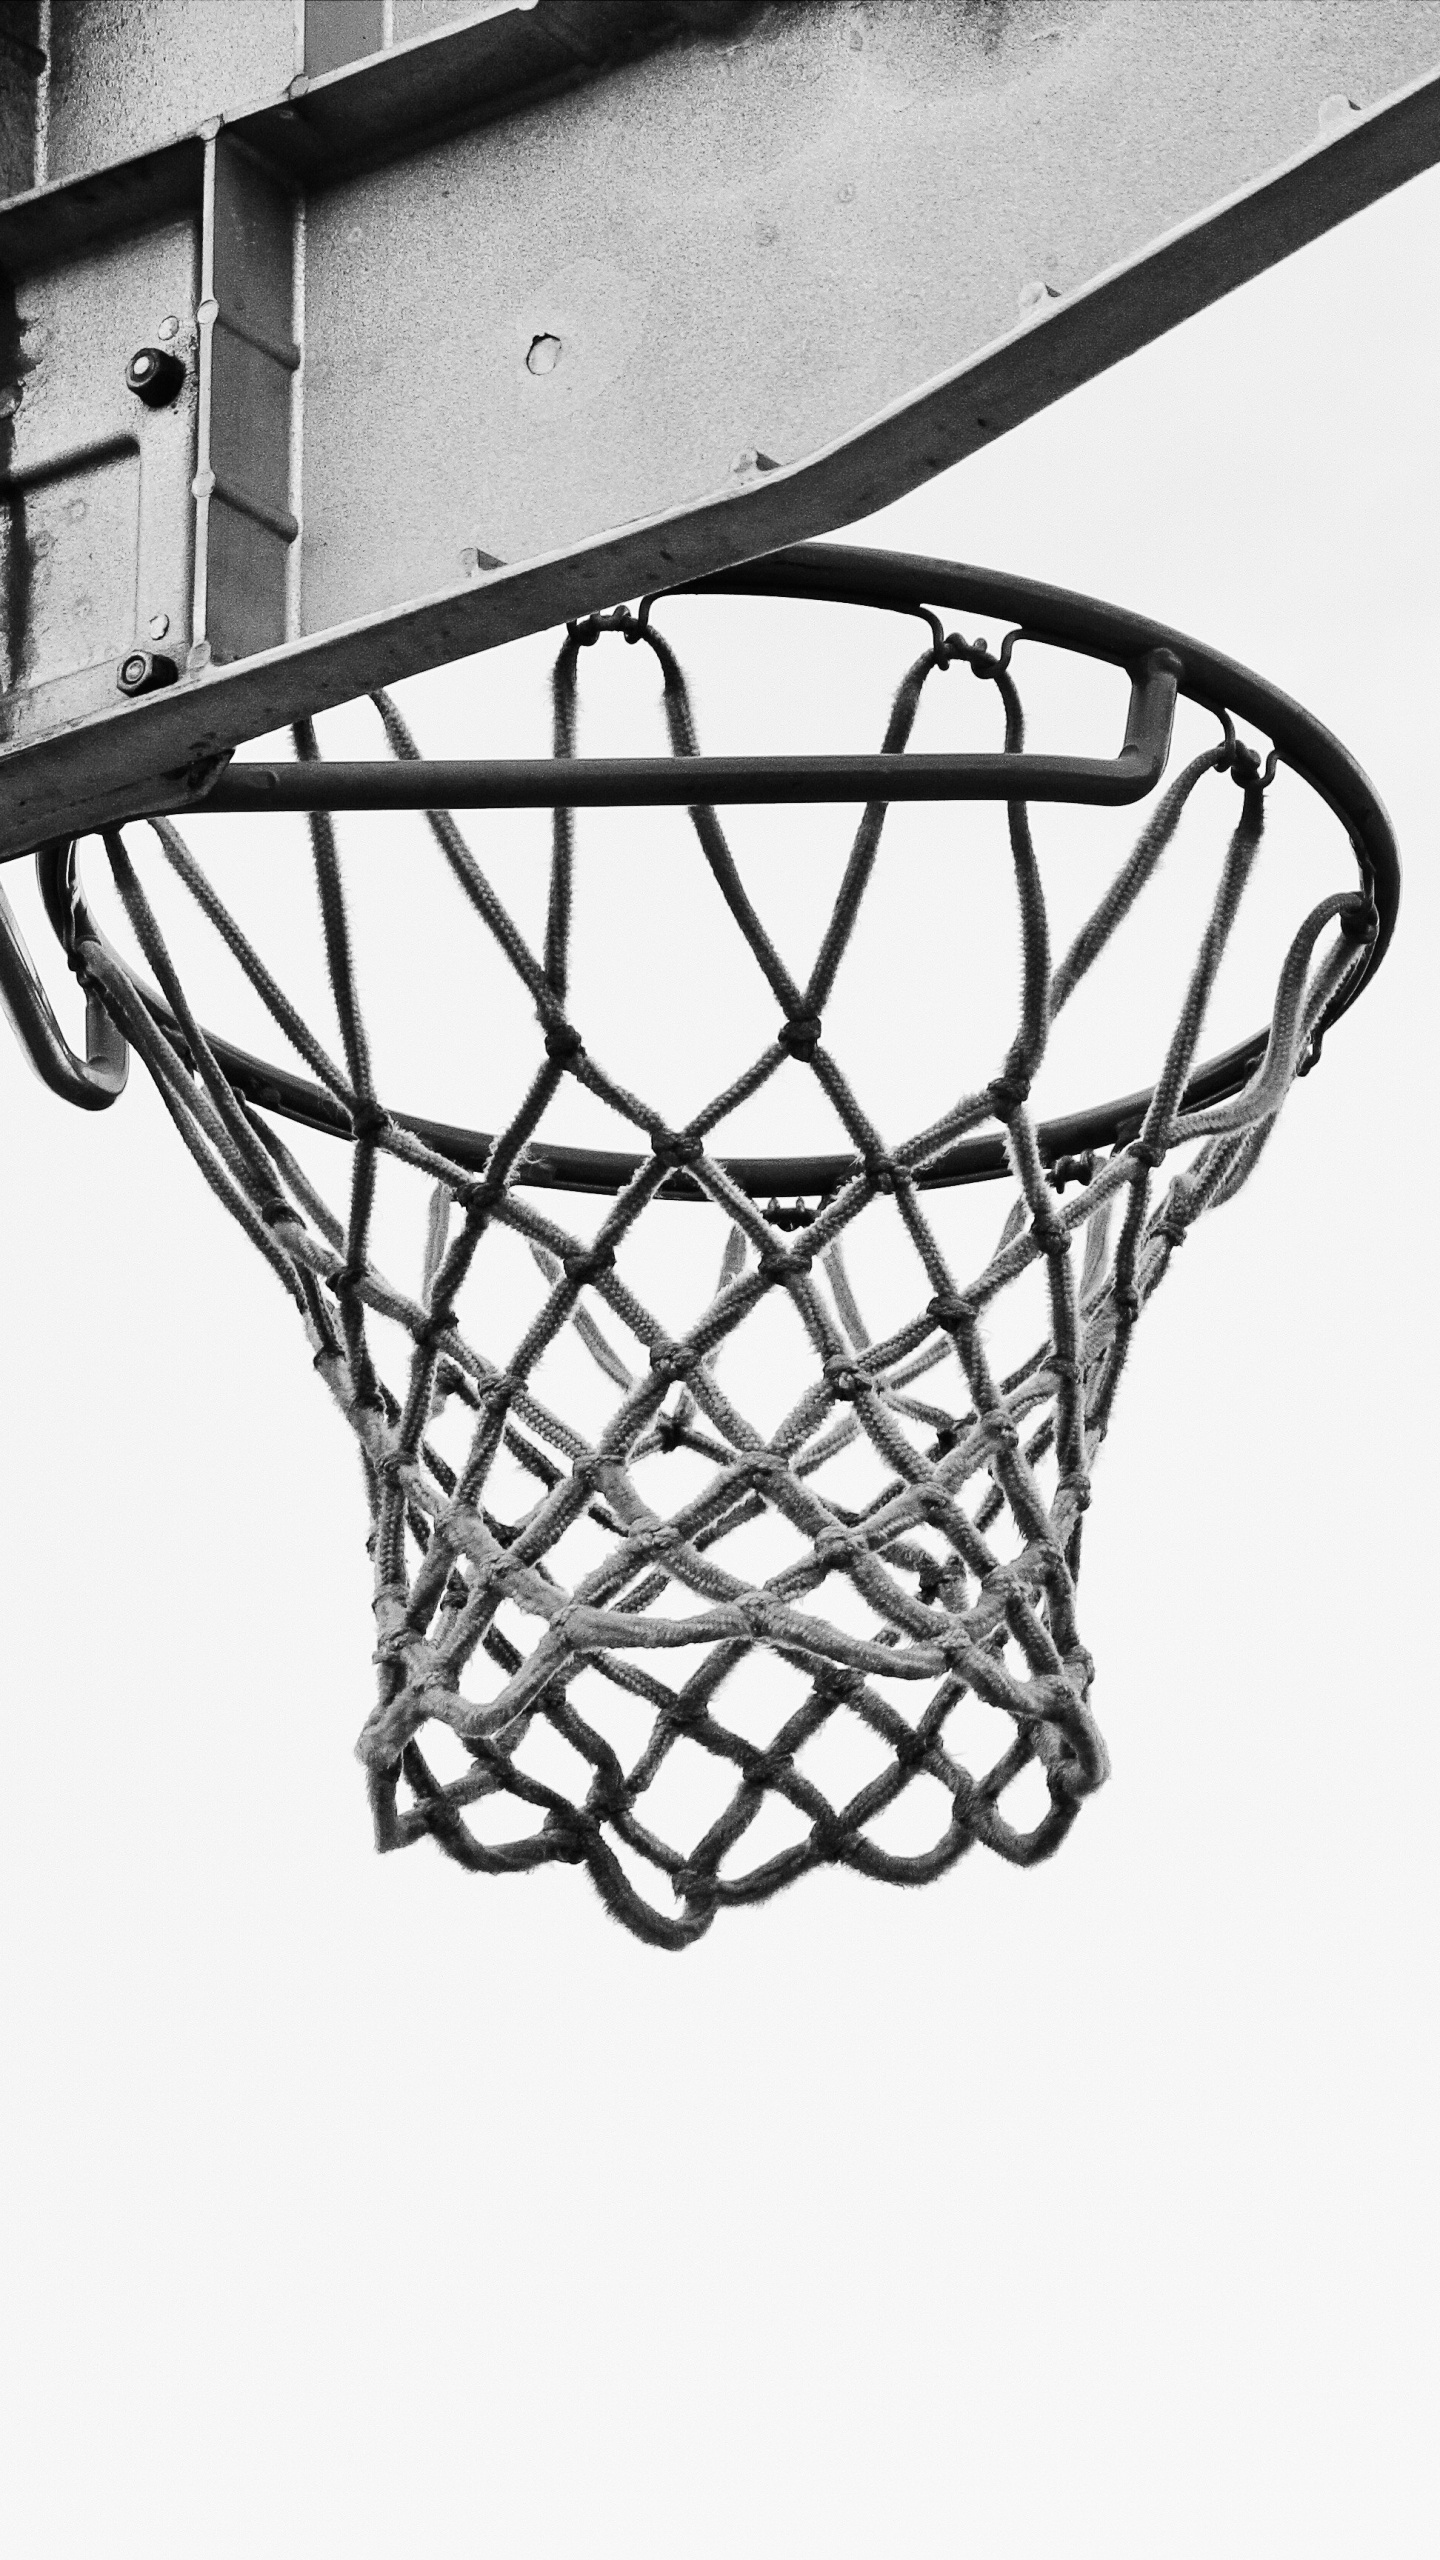 Basketball Auf Basketballkorb in Graustufenfotografie. Wallpaper in 1440x2560 Resolution